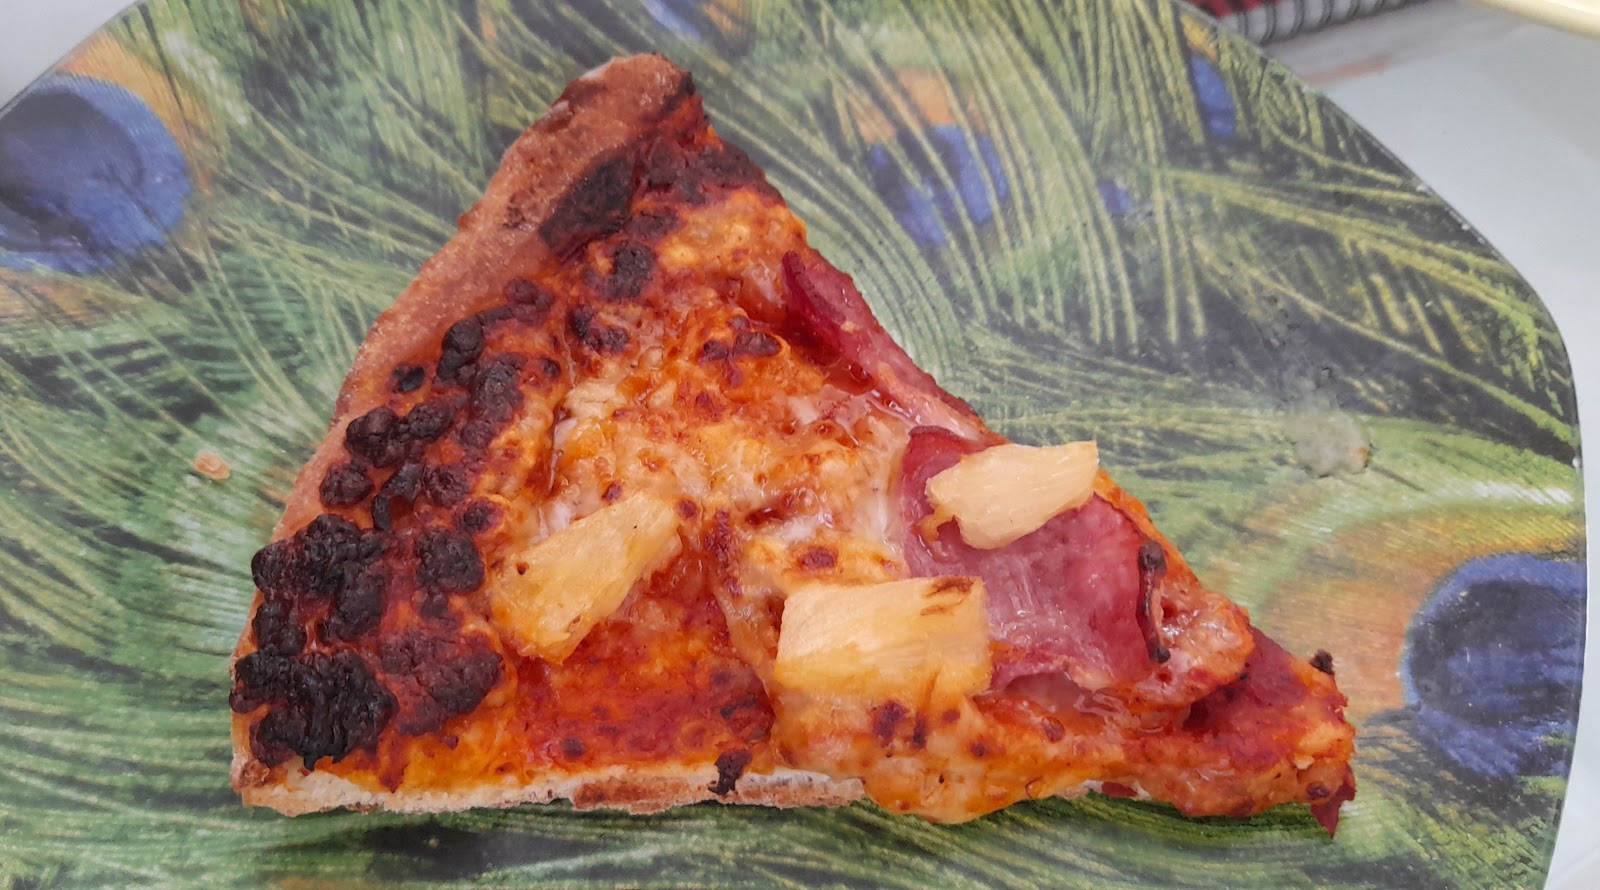 Slightly burned Hawaiian pizza.